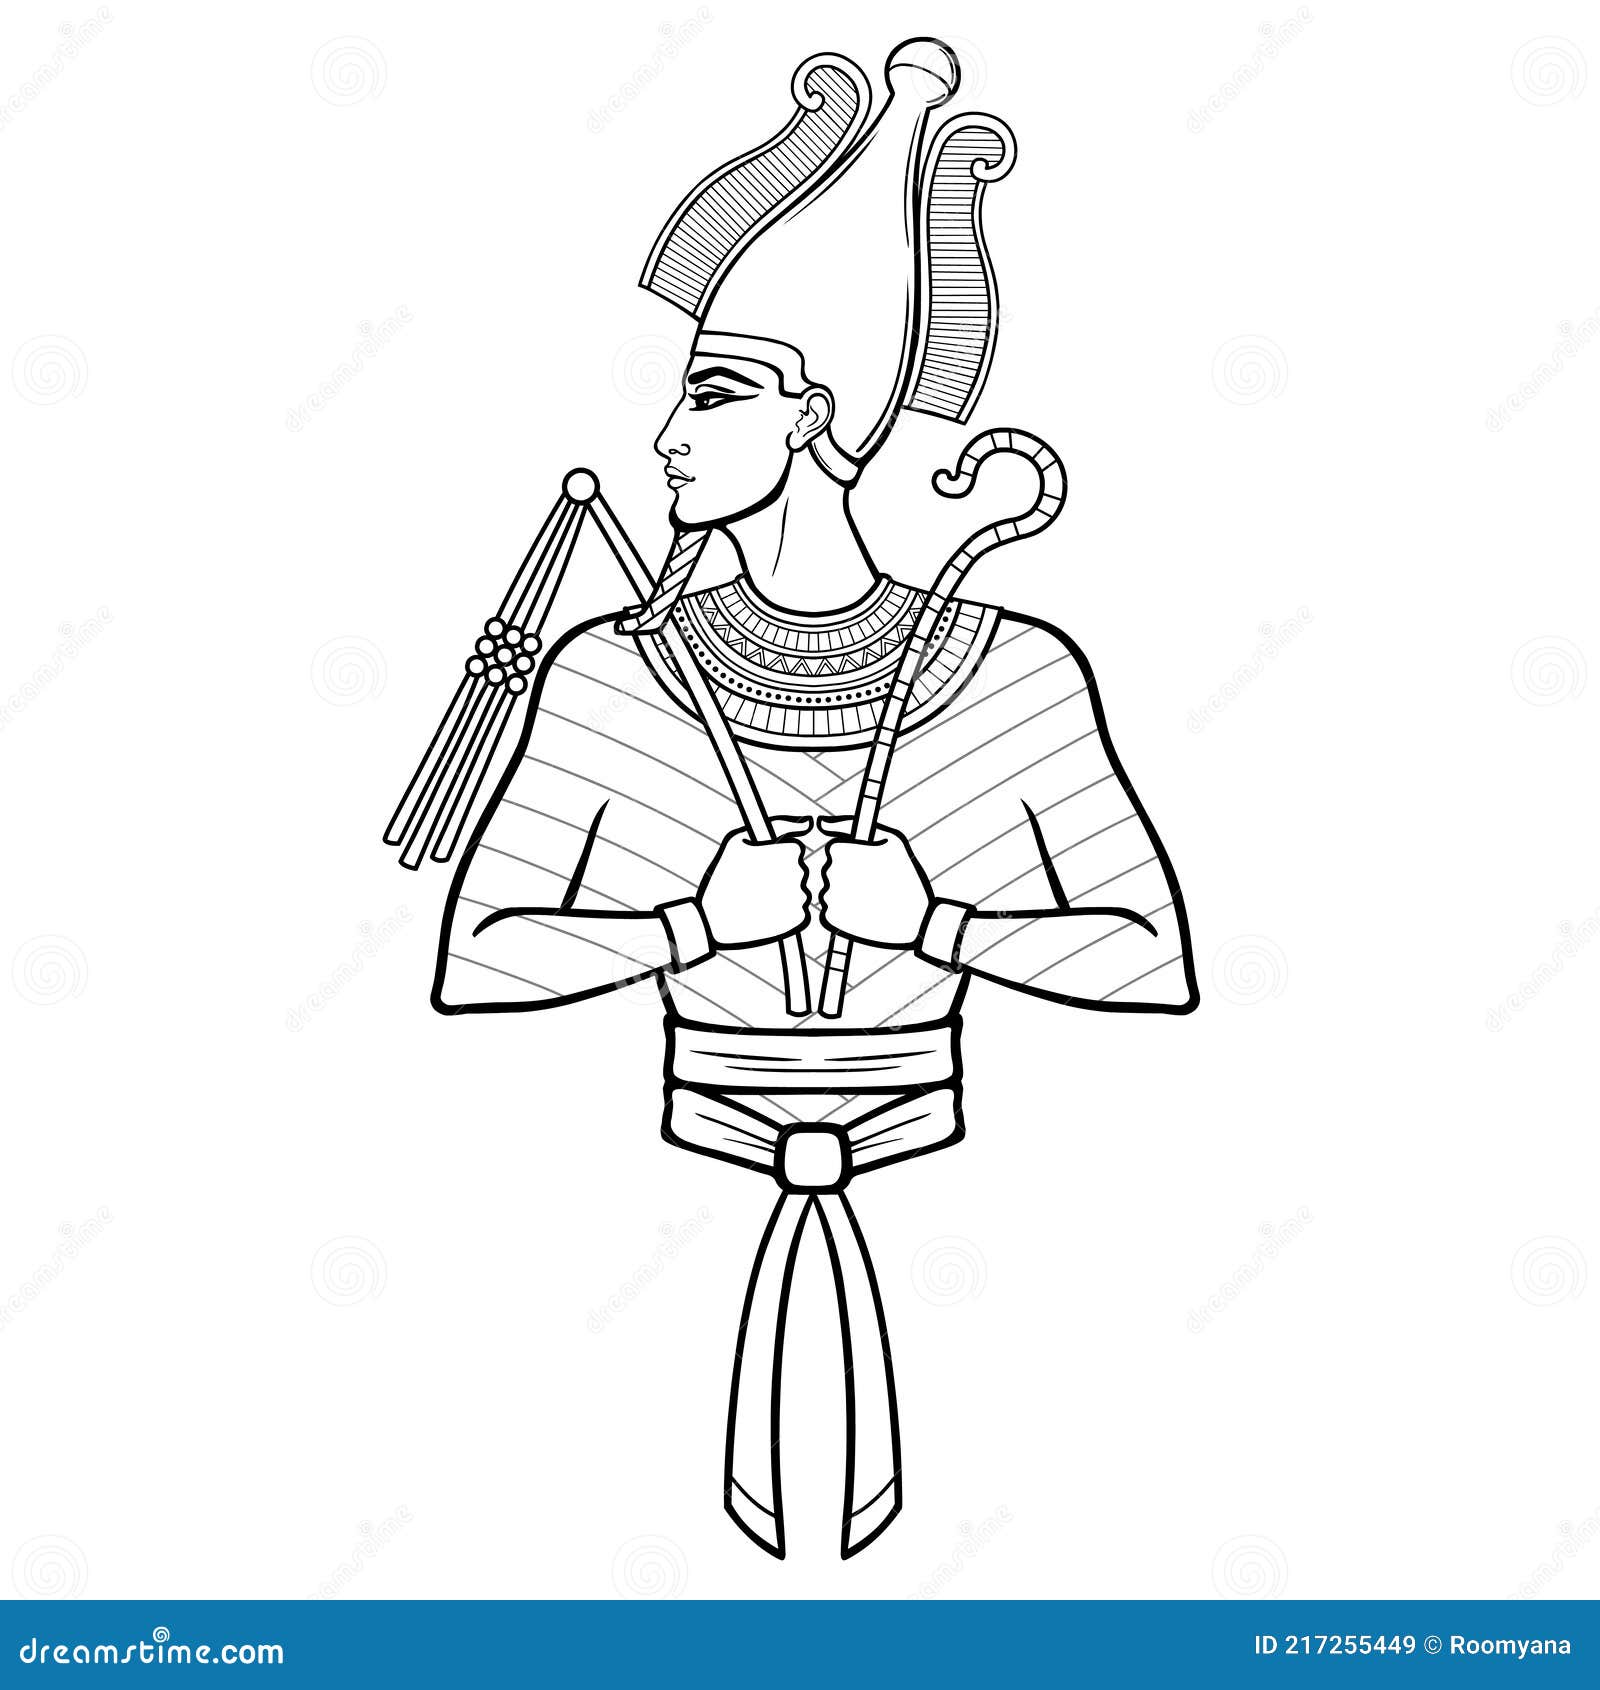 Egyptian Osiris Stock Illustrations  1179 Egyptian Osiris Stock  Illustrations Vectors  Clipart  Dreamstime